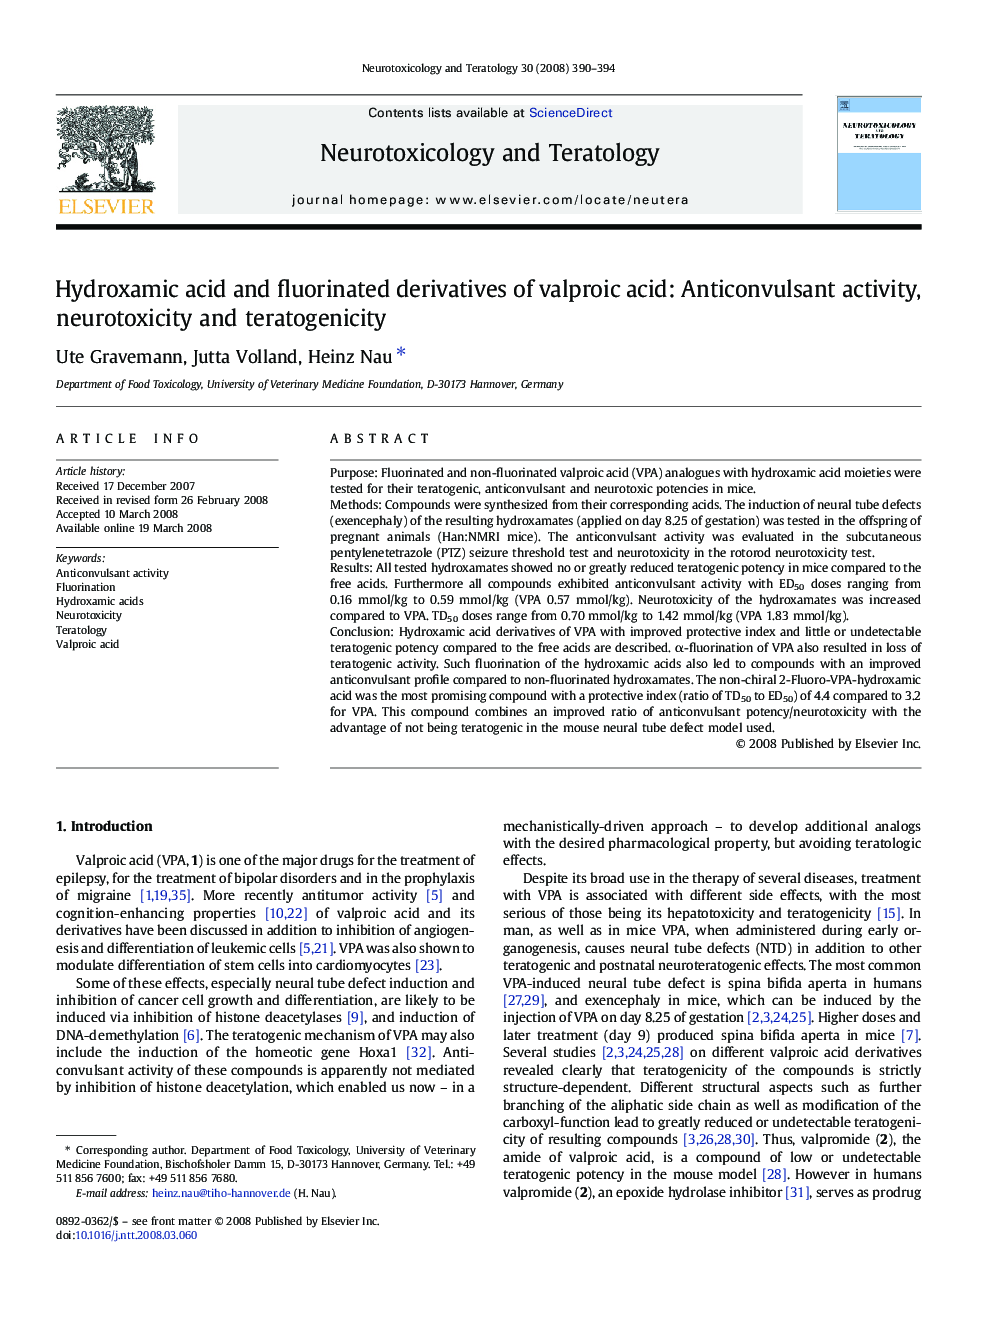 Hydroxamic acid and fluorinated derivatives of valproic acid: Anticonvulsant activity, neurotoxicity and teratogenicity